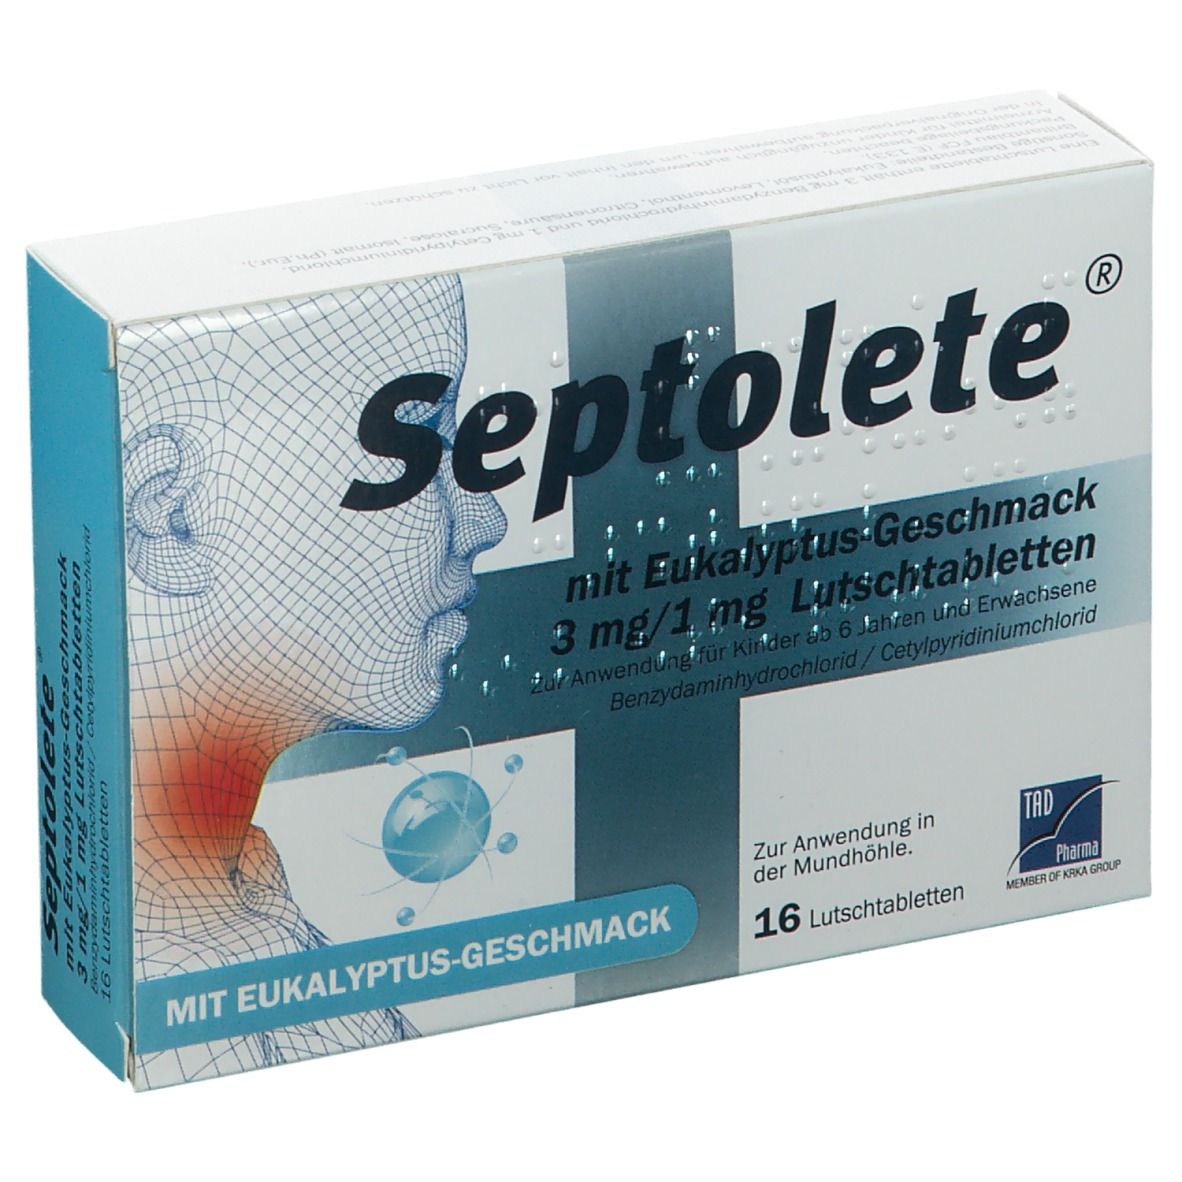 Septolete® 3 mg/1 mg Lutschtabletten Eukalyptus-Geschmack